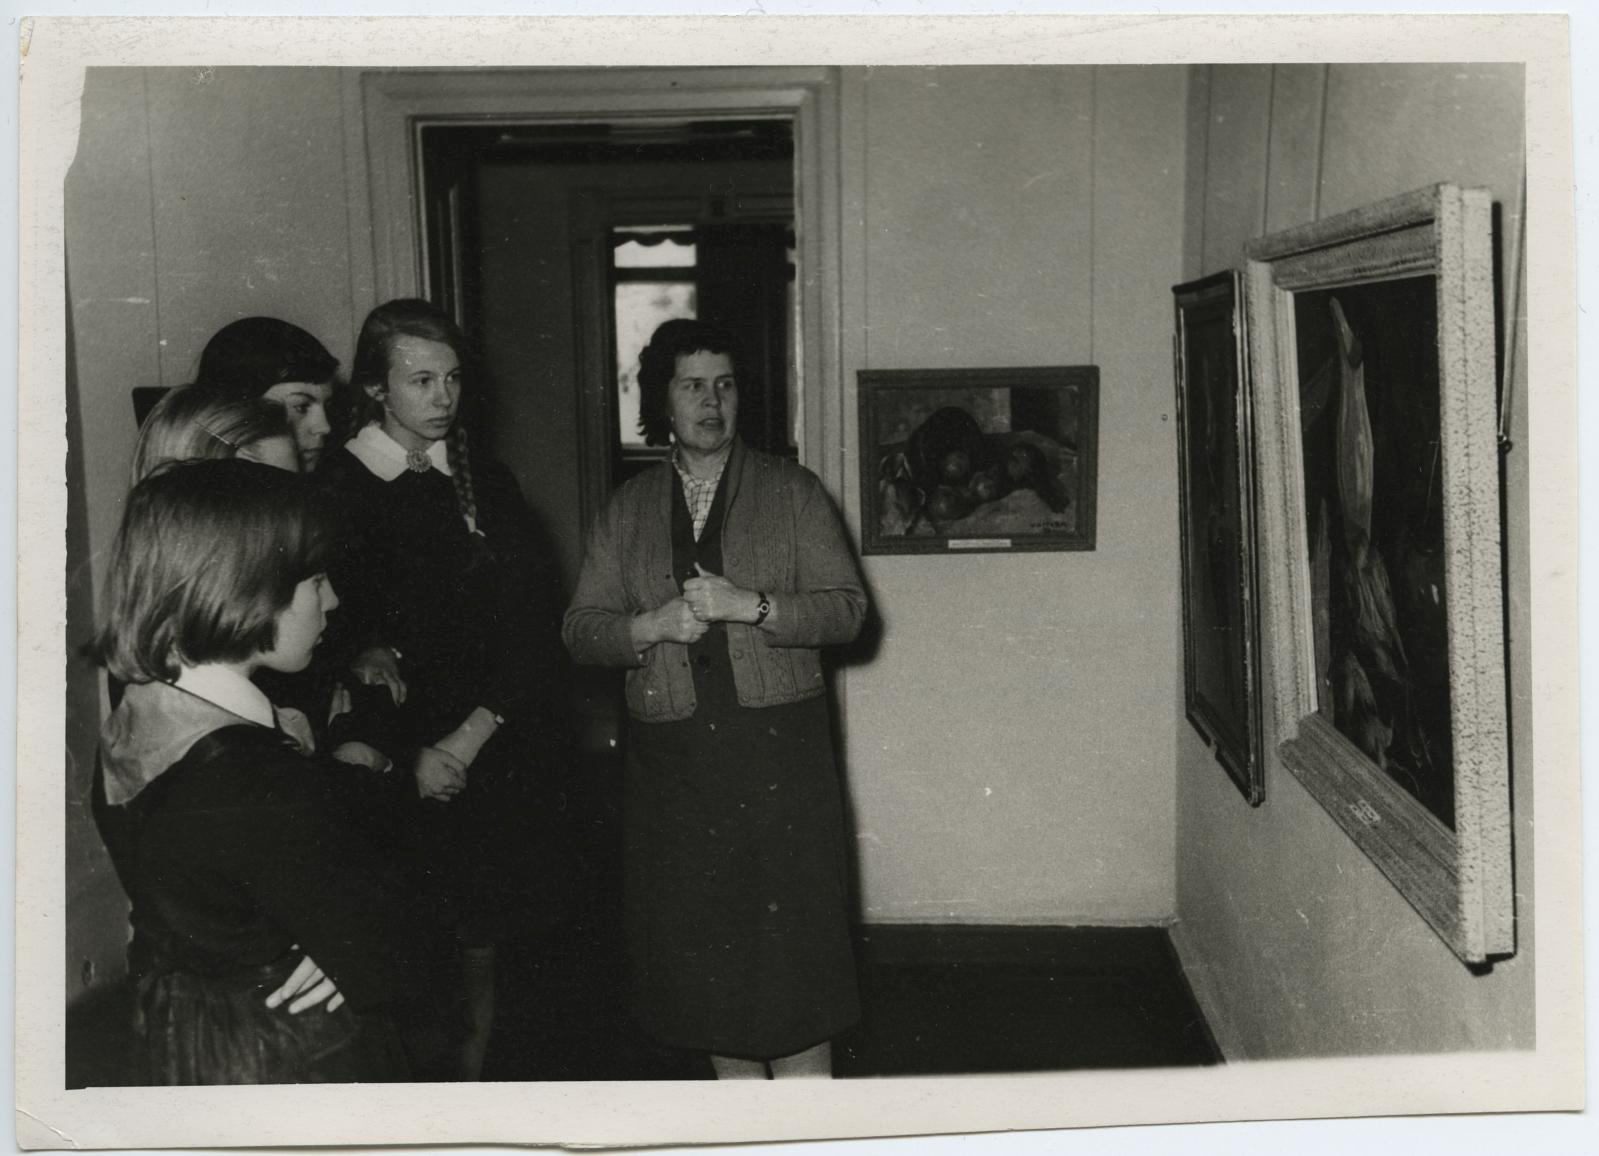 TKM-i 7. kunstiajaloo ringi ekskursioon Eesti maalikunsti näitusel 27. veebr. 1962. Juhendab vanem teaduslik töötaja Virve Hinnov.